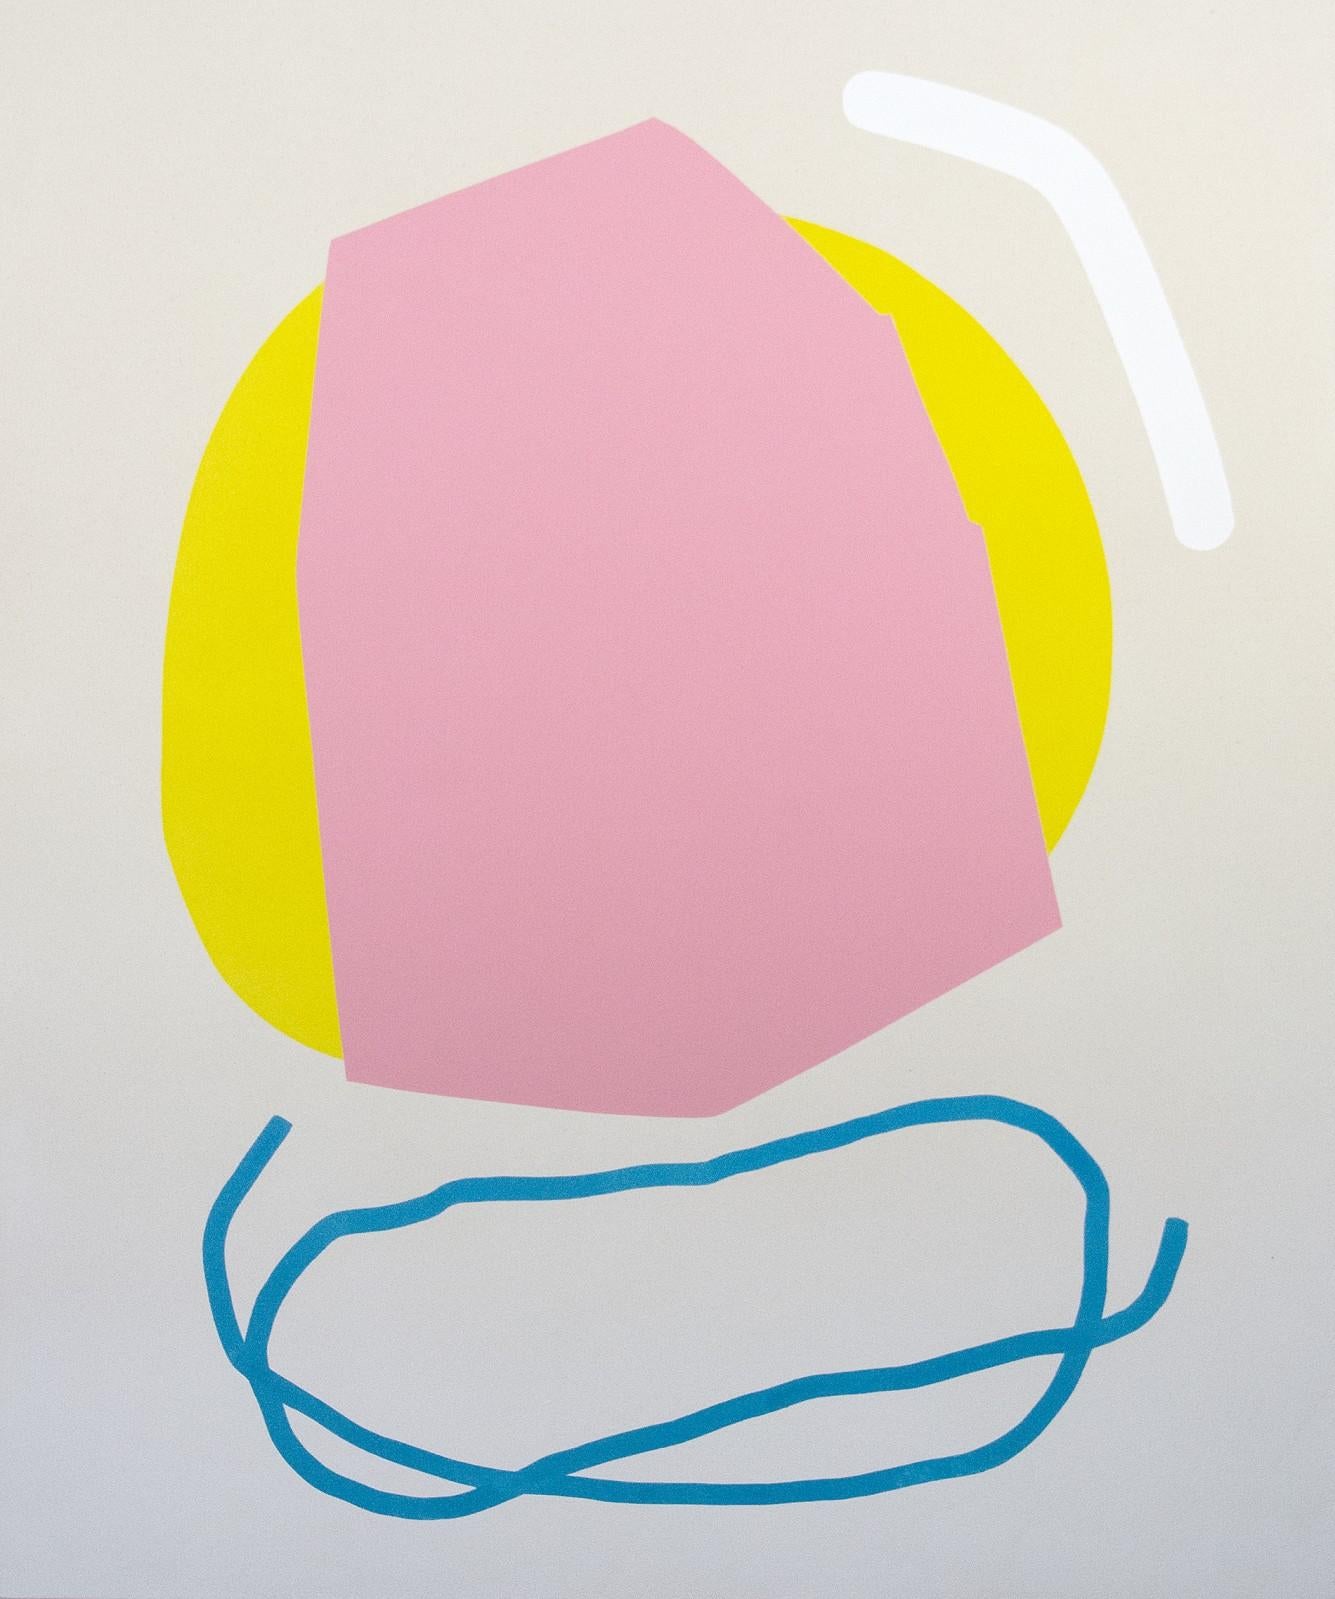 Rose contre-jaune et ligne bleue - formes abstraites colorées, acrylique sur toile